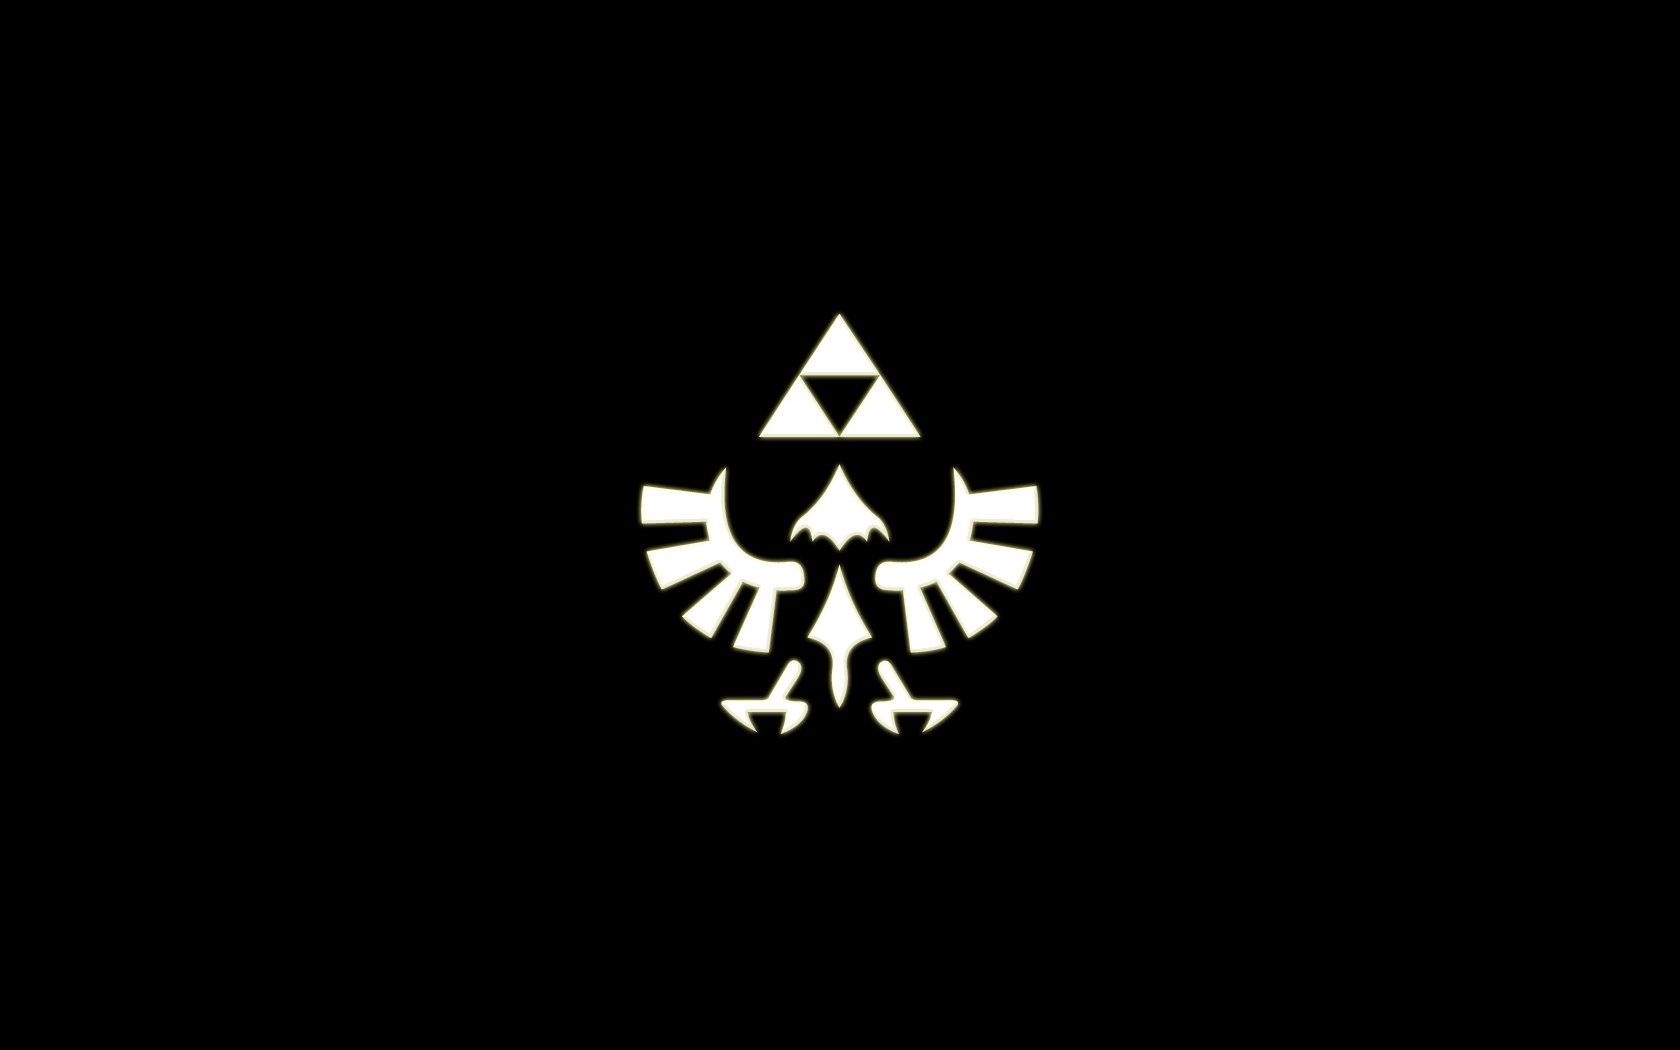 The Legend of Zelda wallpaper | 1920x1080 | 5135 | WallpaperUP